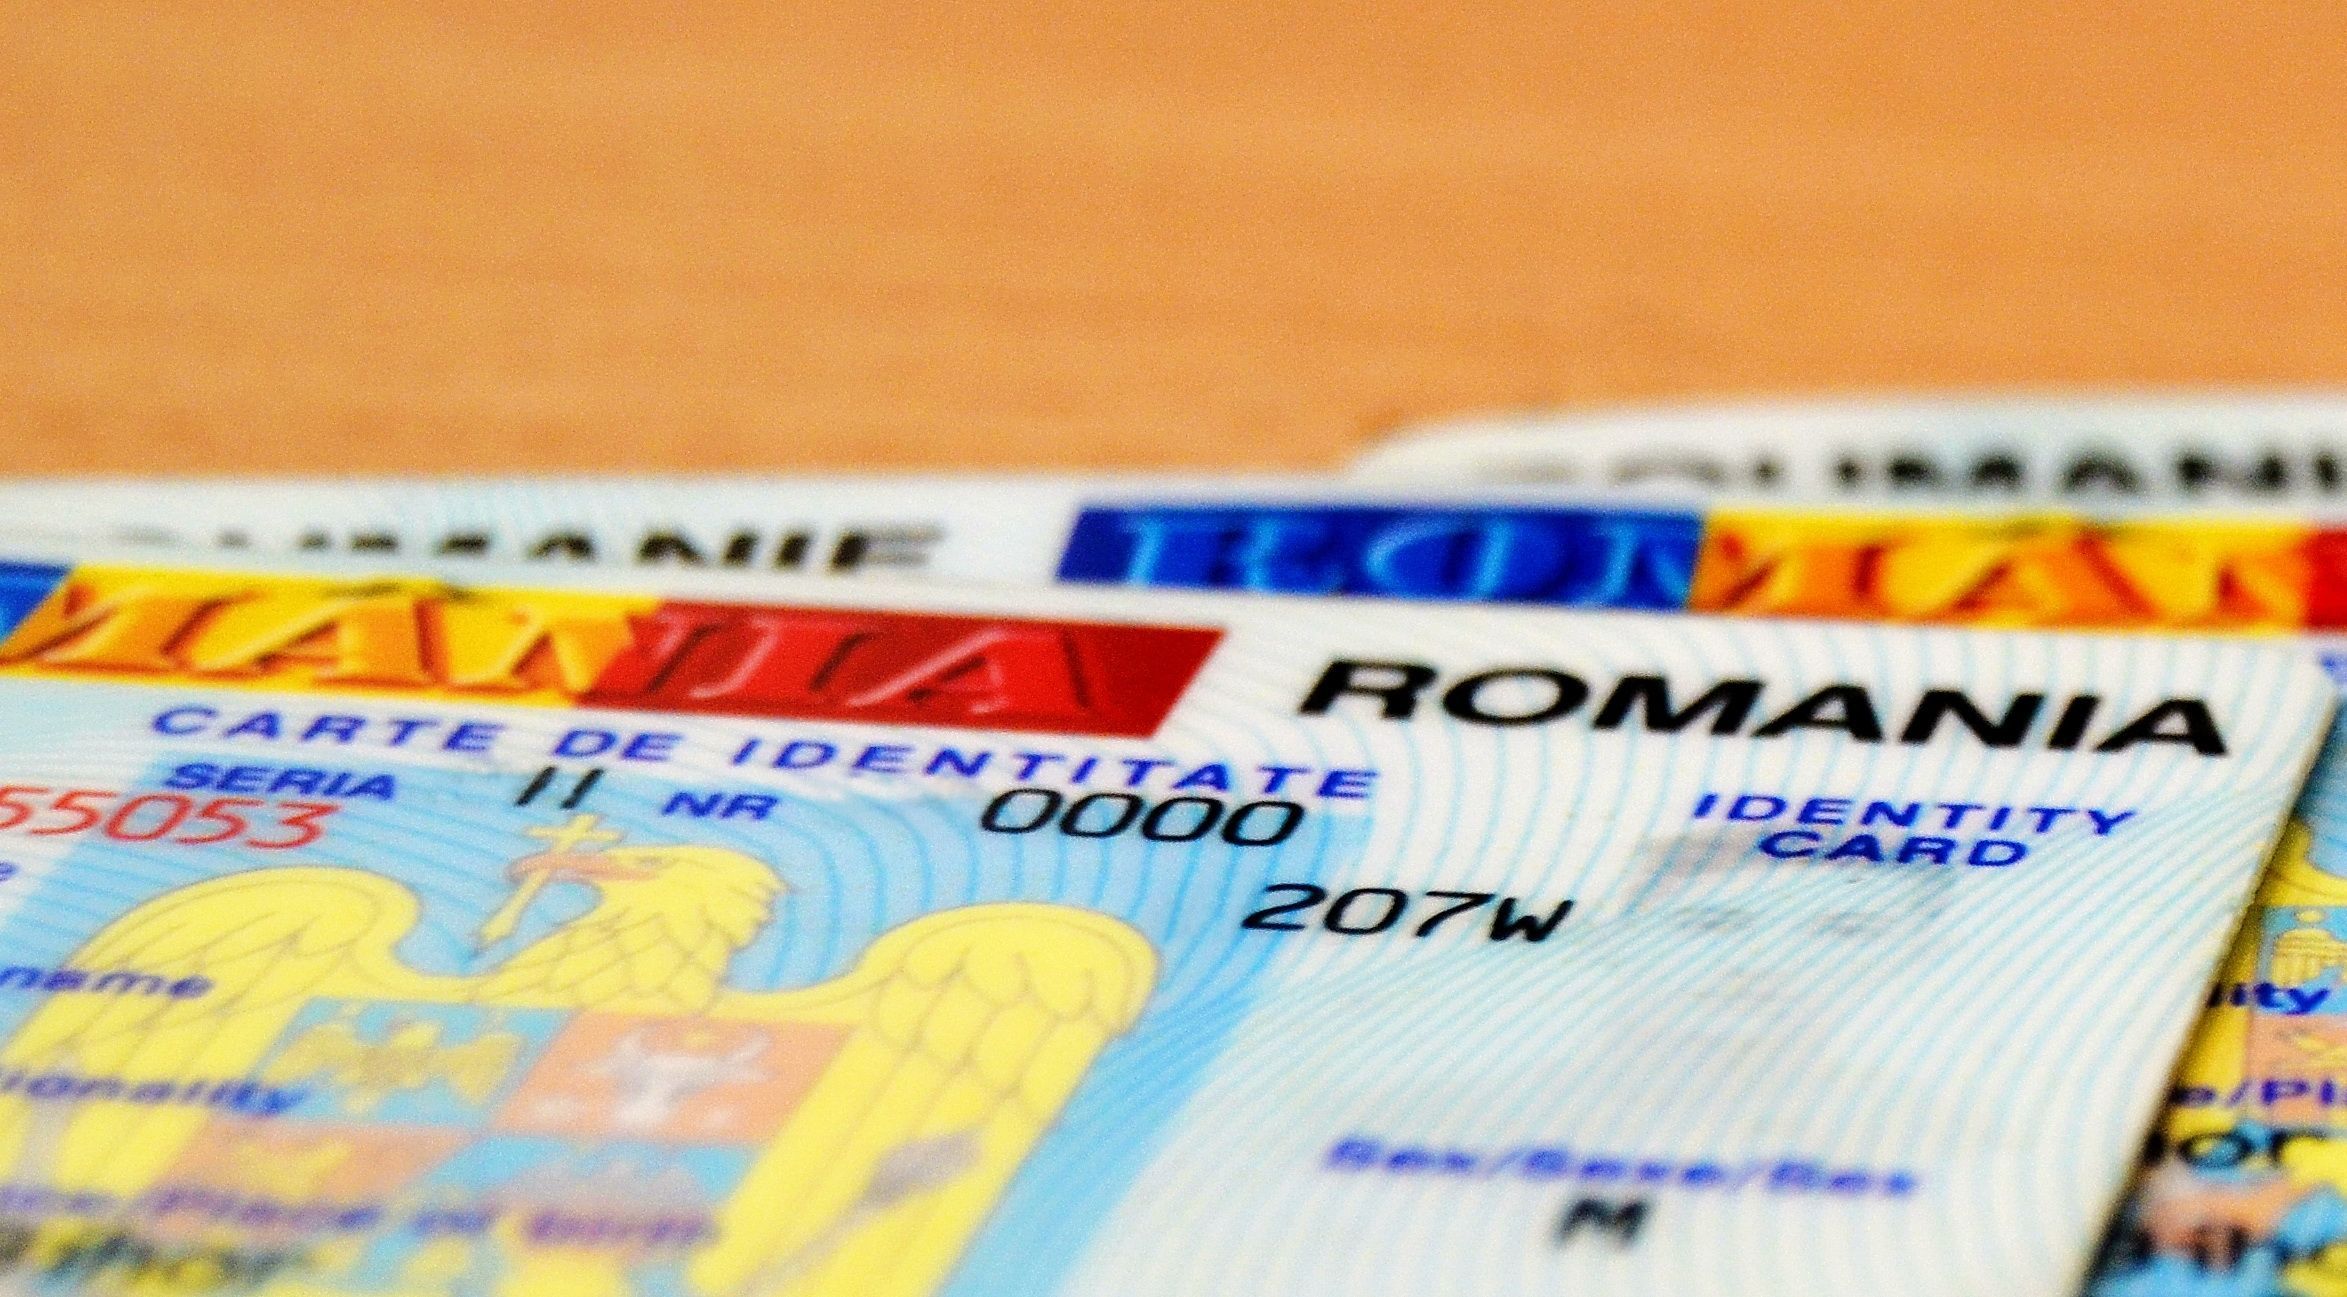 Au confecționat zeci de buletine și permise de conducere românești false; Trei persoane, trimise pe banca acuzaților